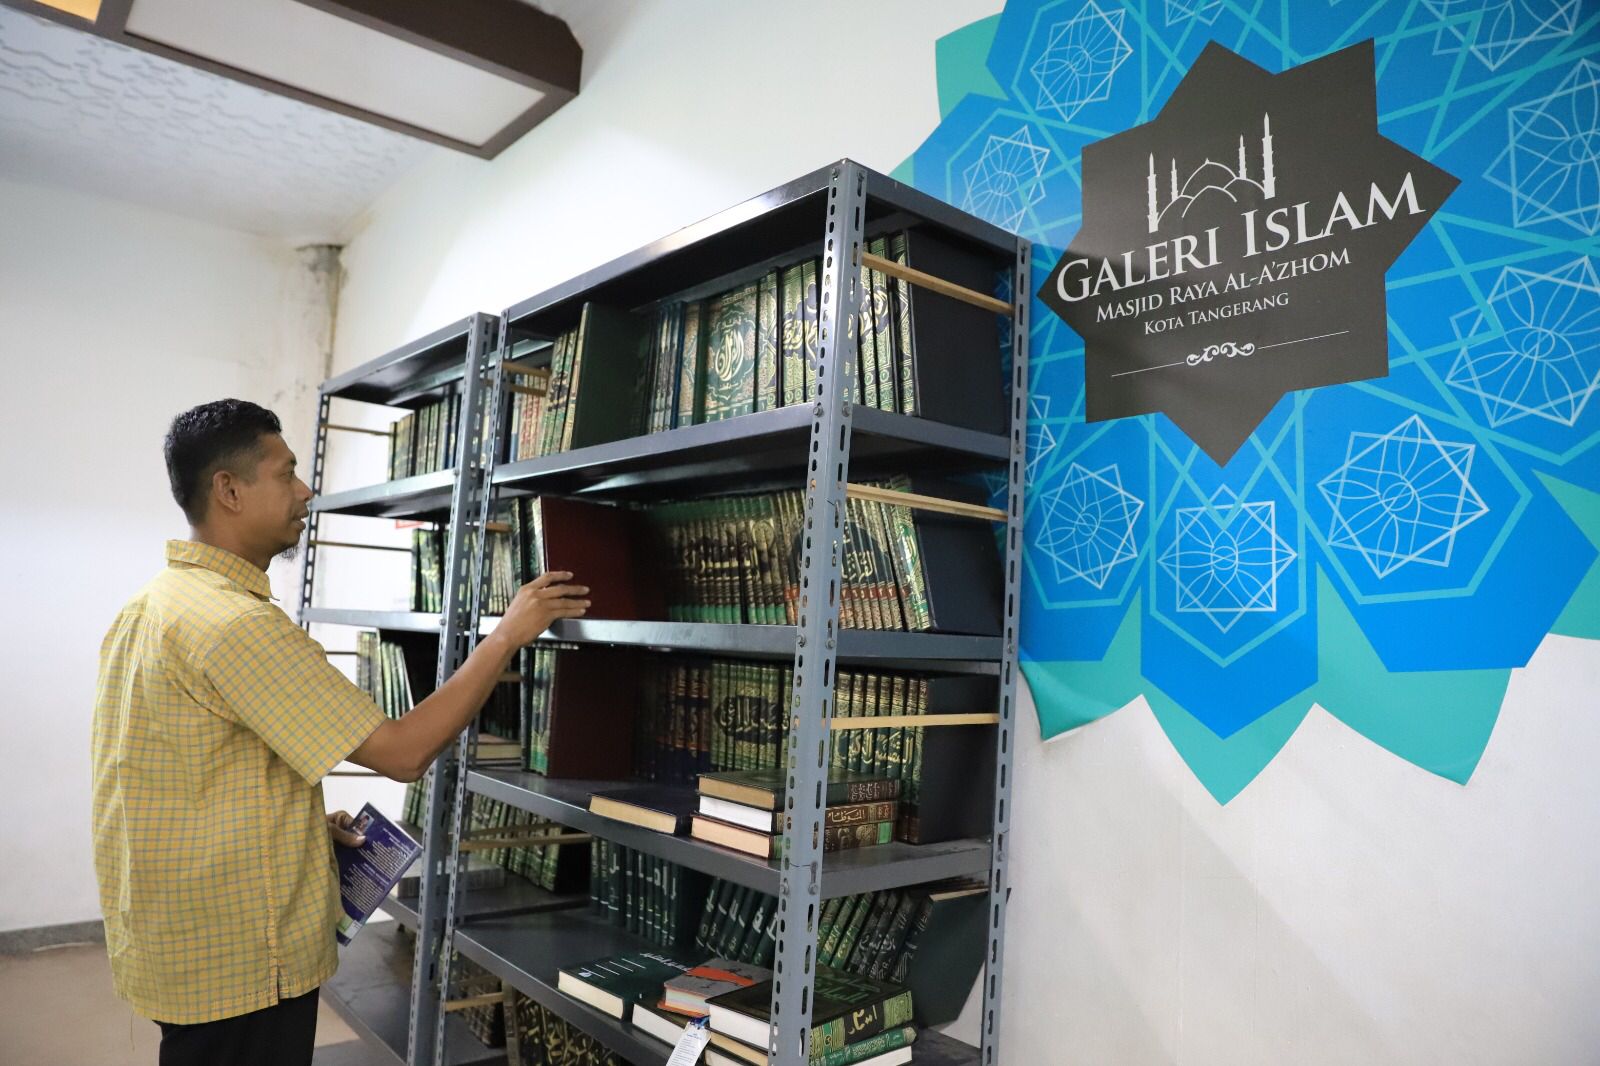 IMG-melihat-galeri-islam-di-masjid-al-a-zhom-kota-tangerang-suguhkan-berbagai-informasi-tentang-keislaman